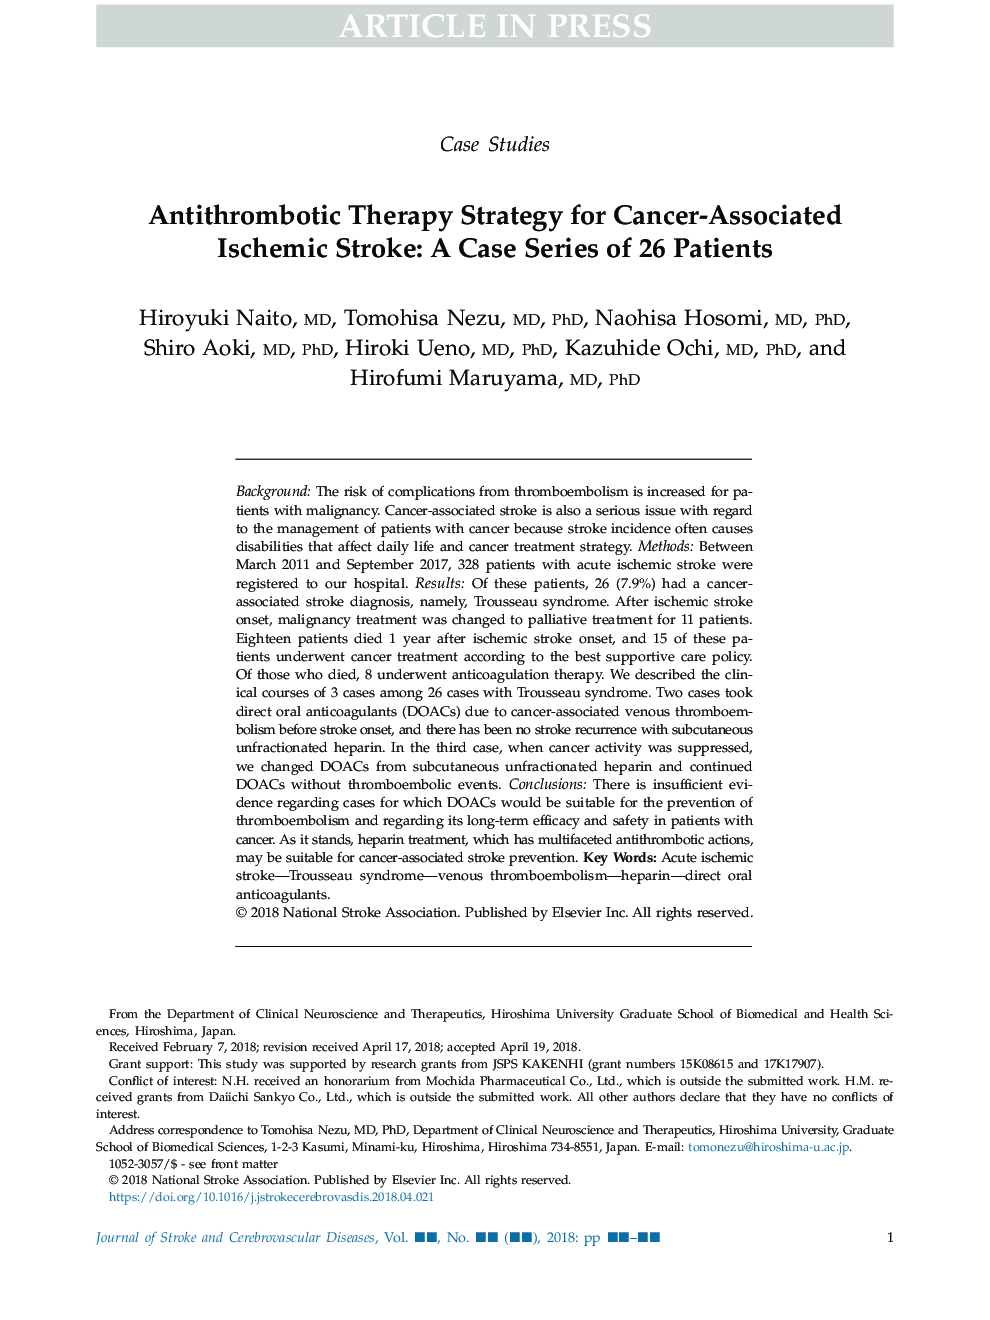 استراتژی درمان آنتی ترومبوتیک برای سکته مغزی ایسکمیک مرتبط با سرطان: یک سری موارد از 26 بیمار 